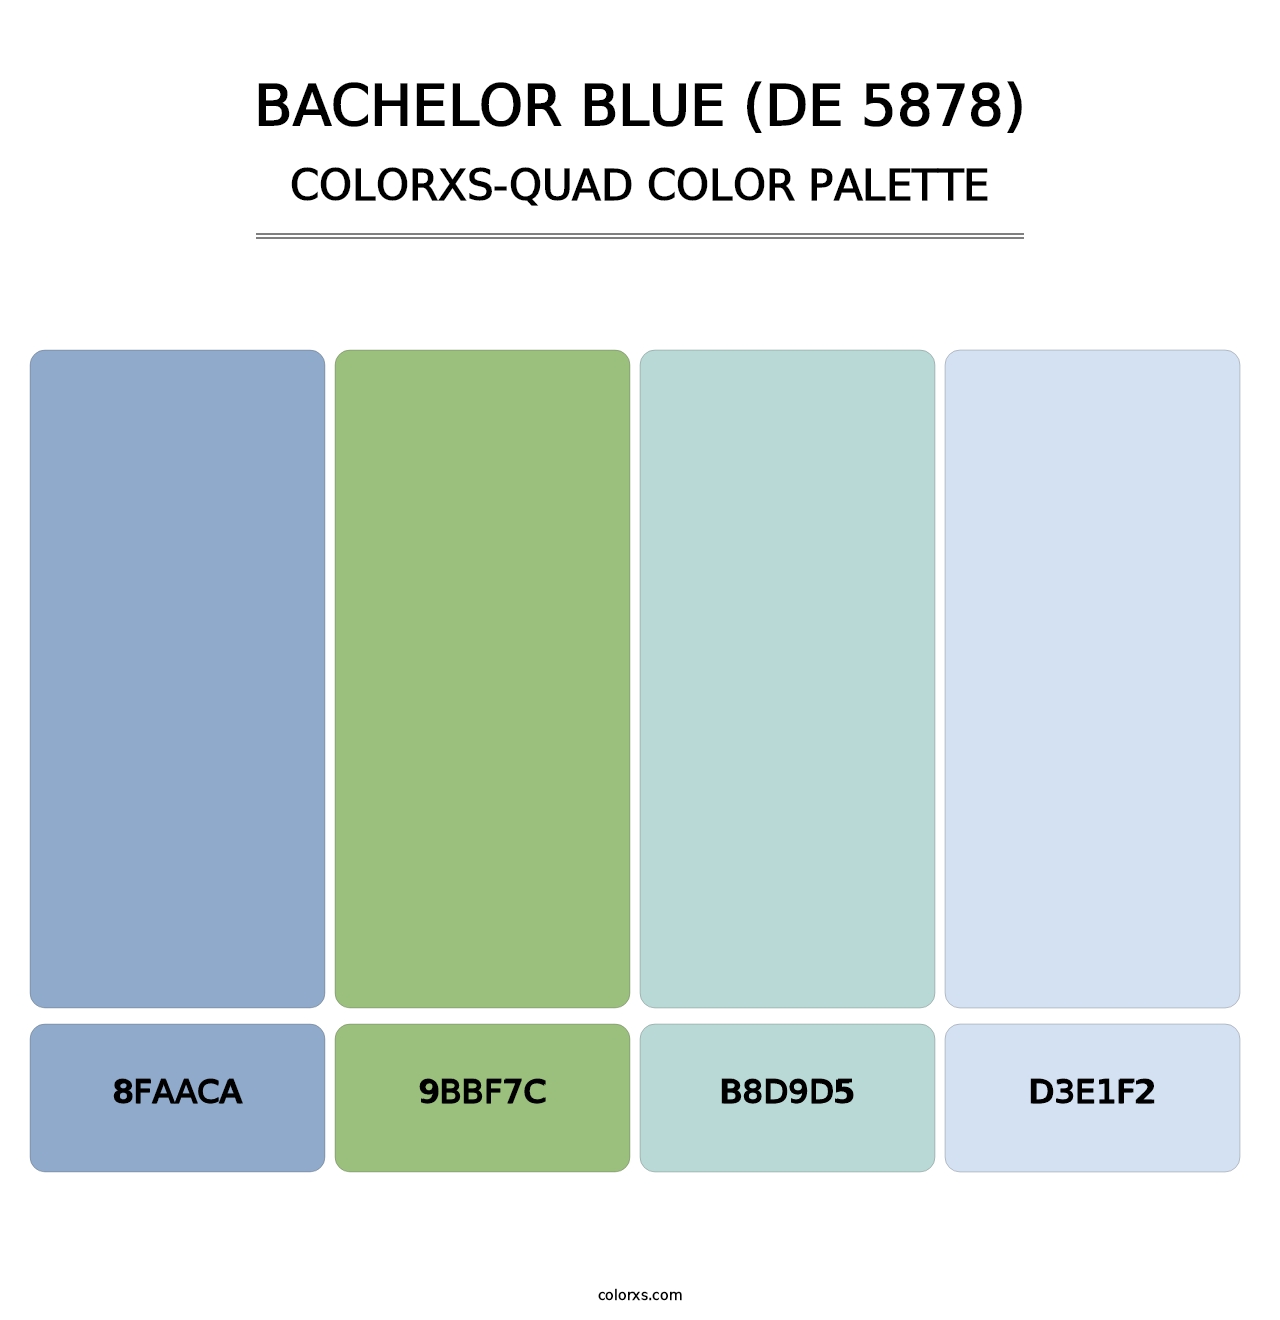 Bachelor Blue (DE 5878) - Colorxs Quad Palette